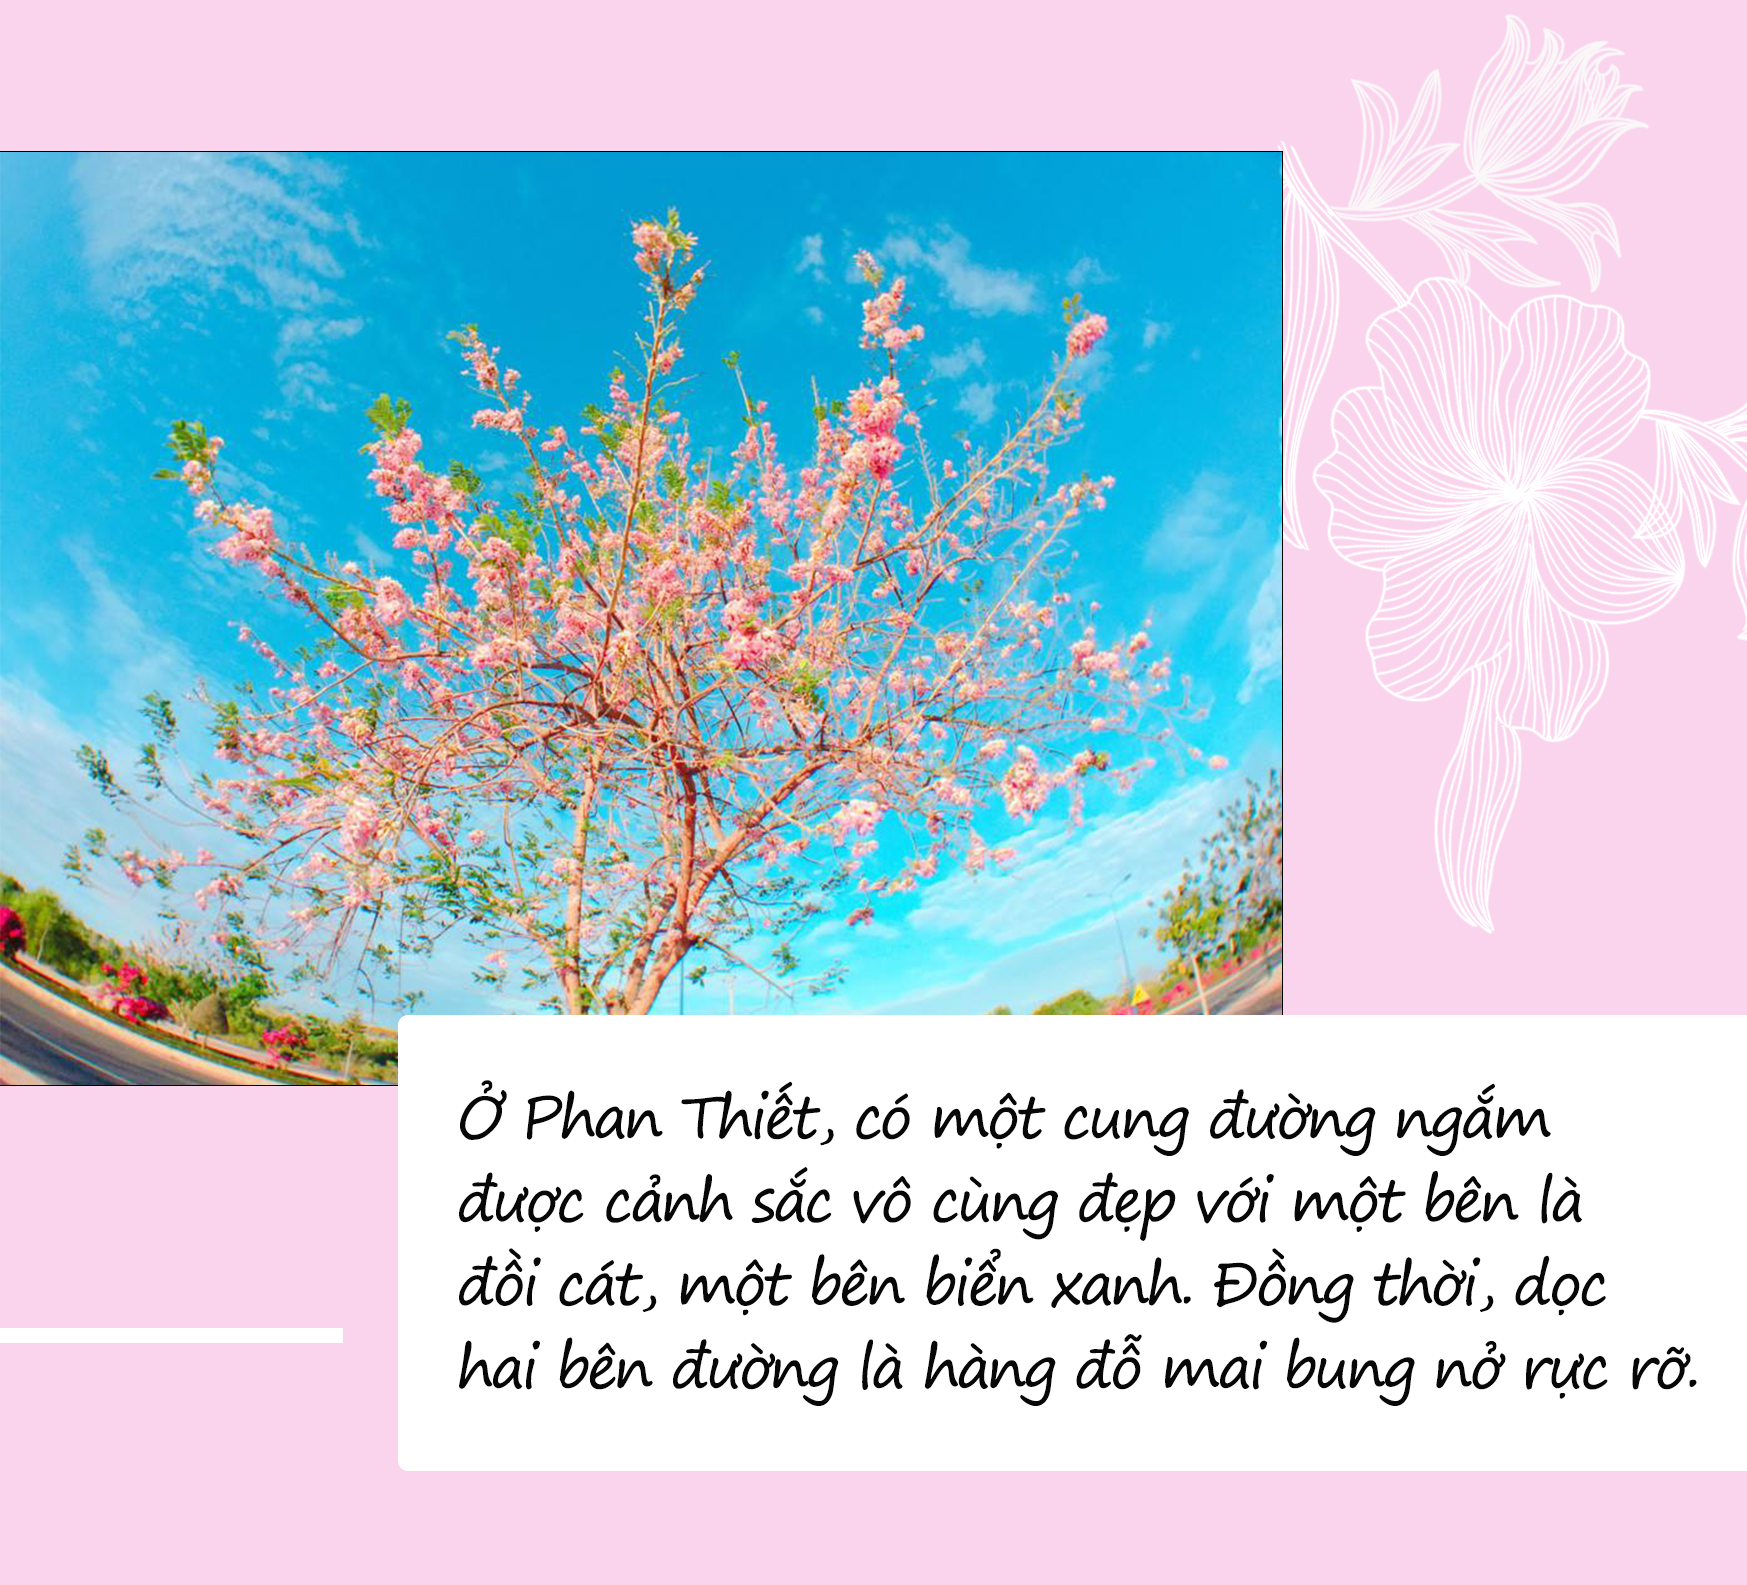 Mùa hoa: Hoa đỗ mai nở rộ đẹp không kém hoa đào, nơi check-in lại sát Sài Gòn - 9